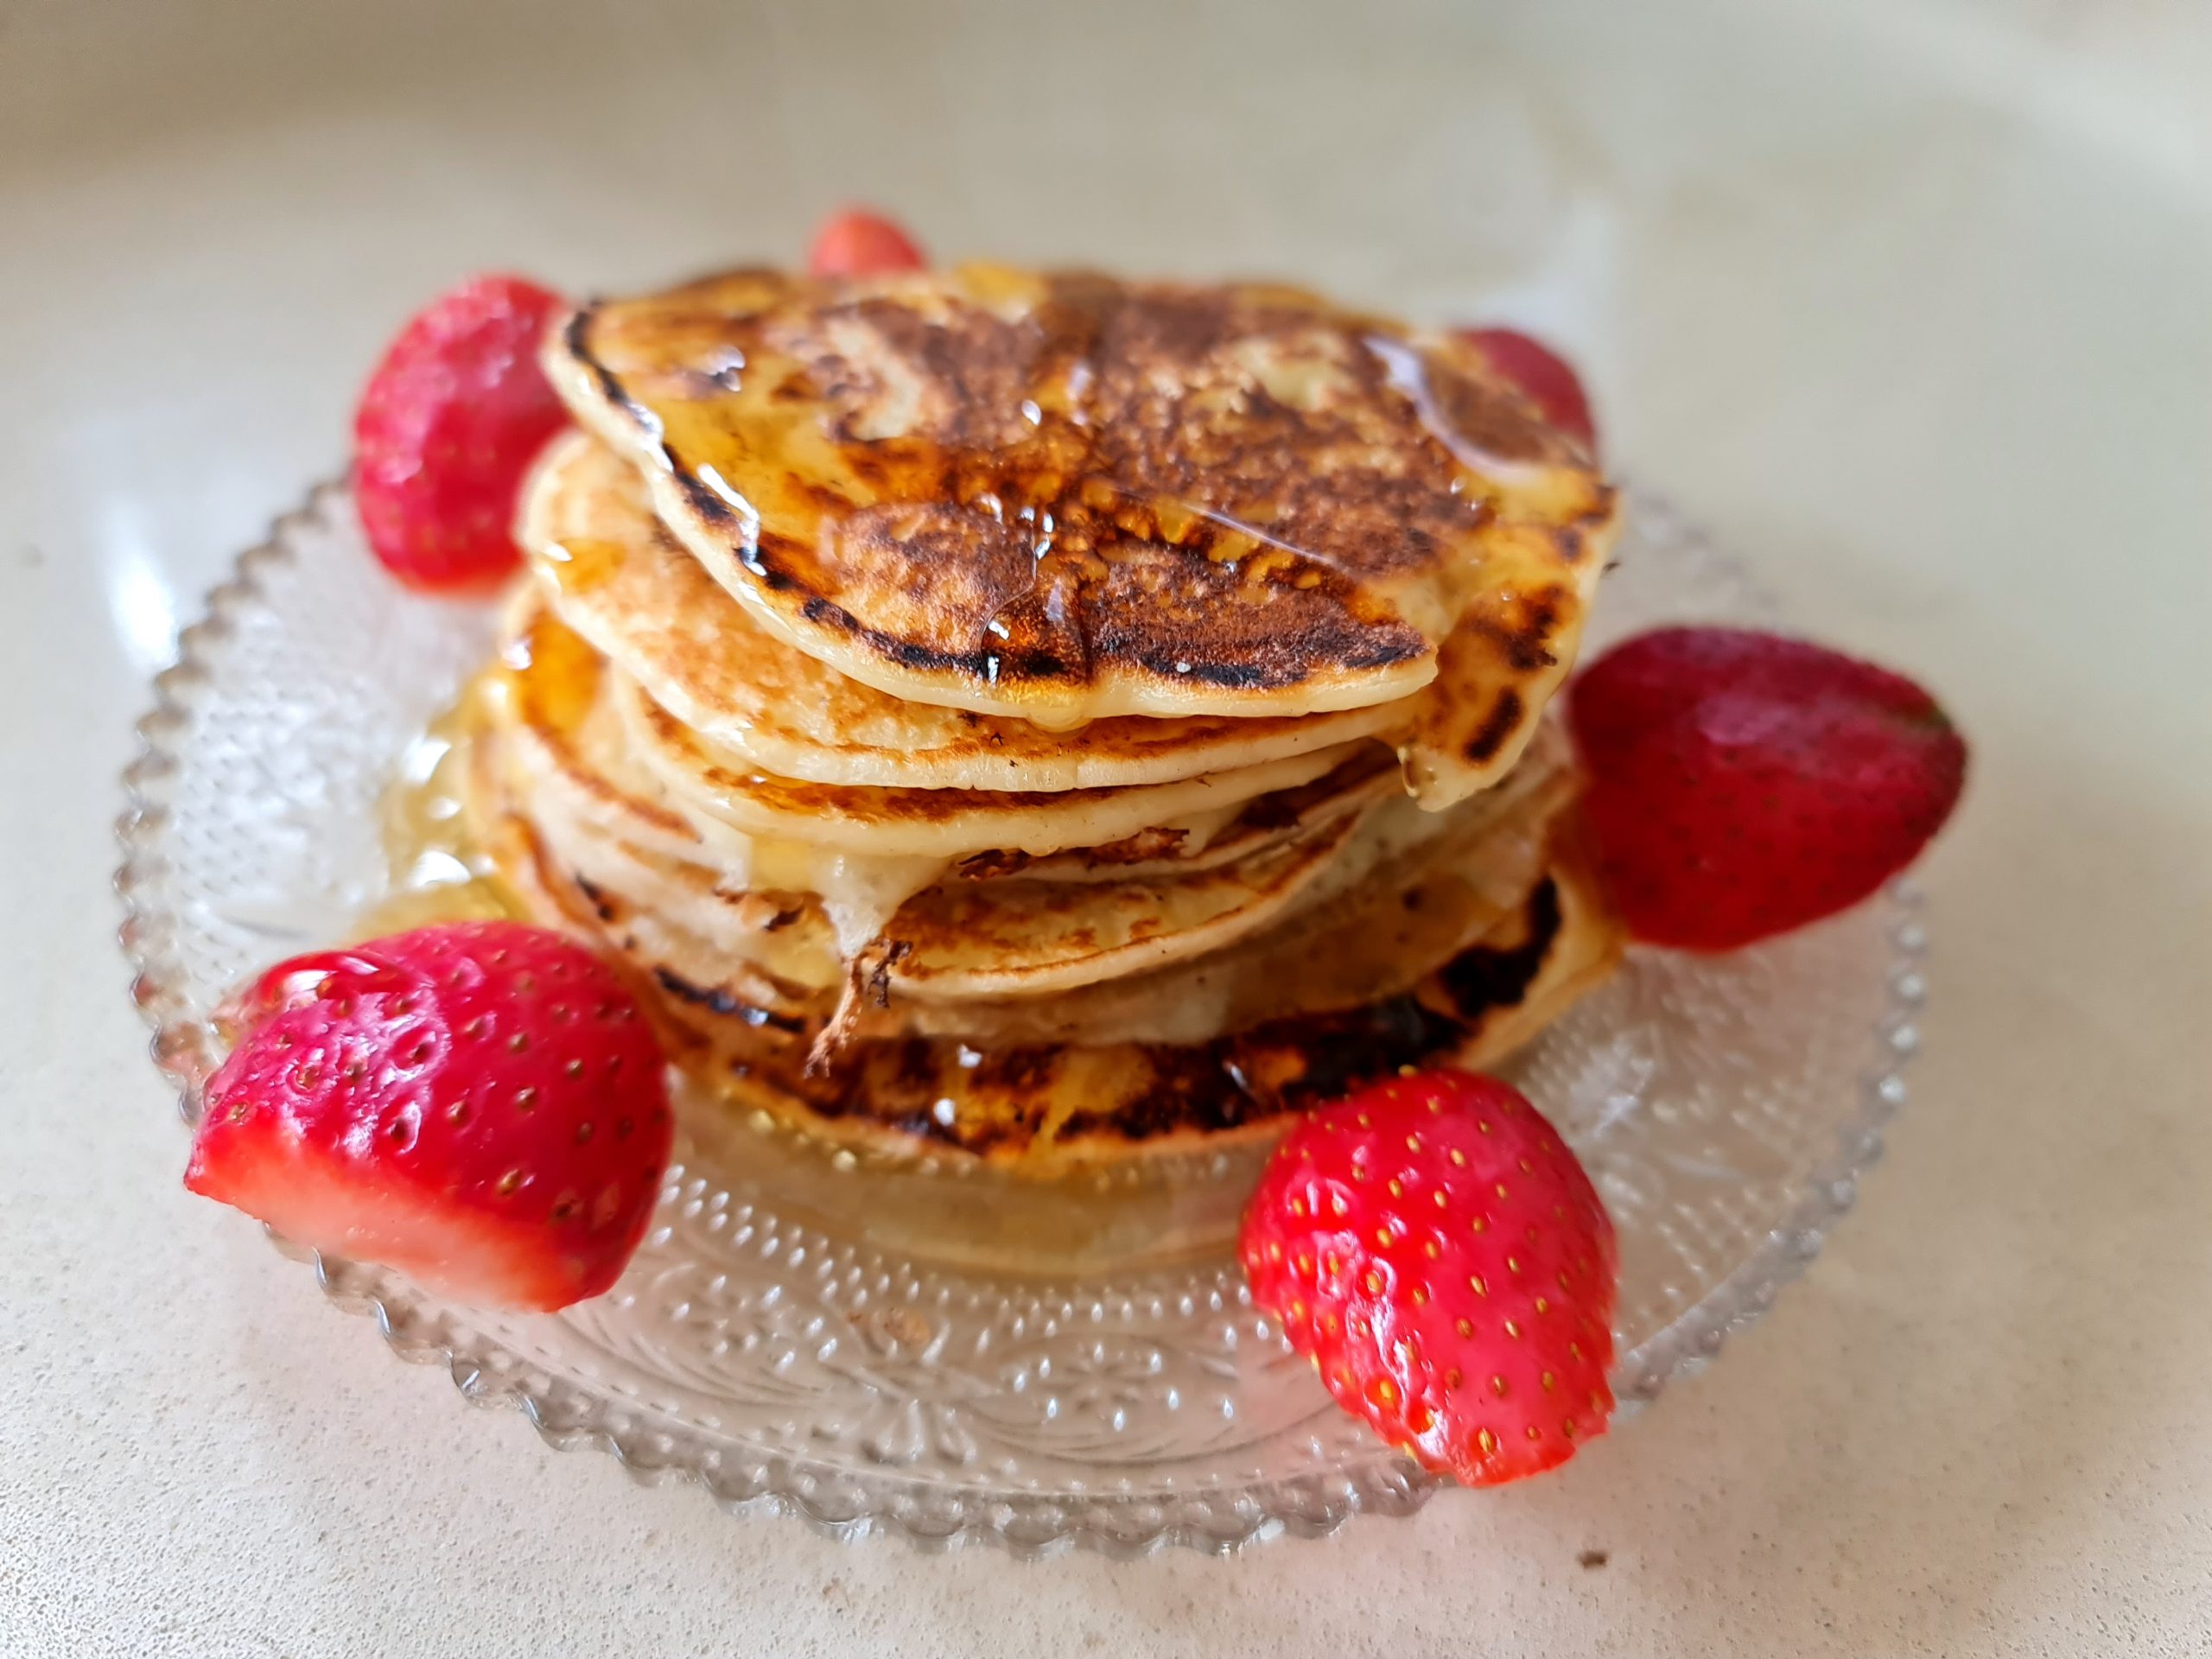 Les pancakes healthy au fromage blanc et fraises (sans farine et huile)